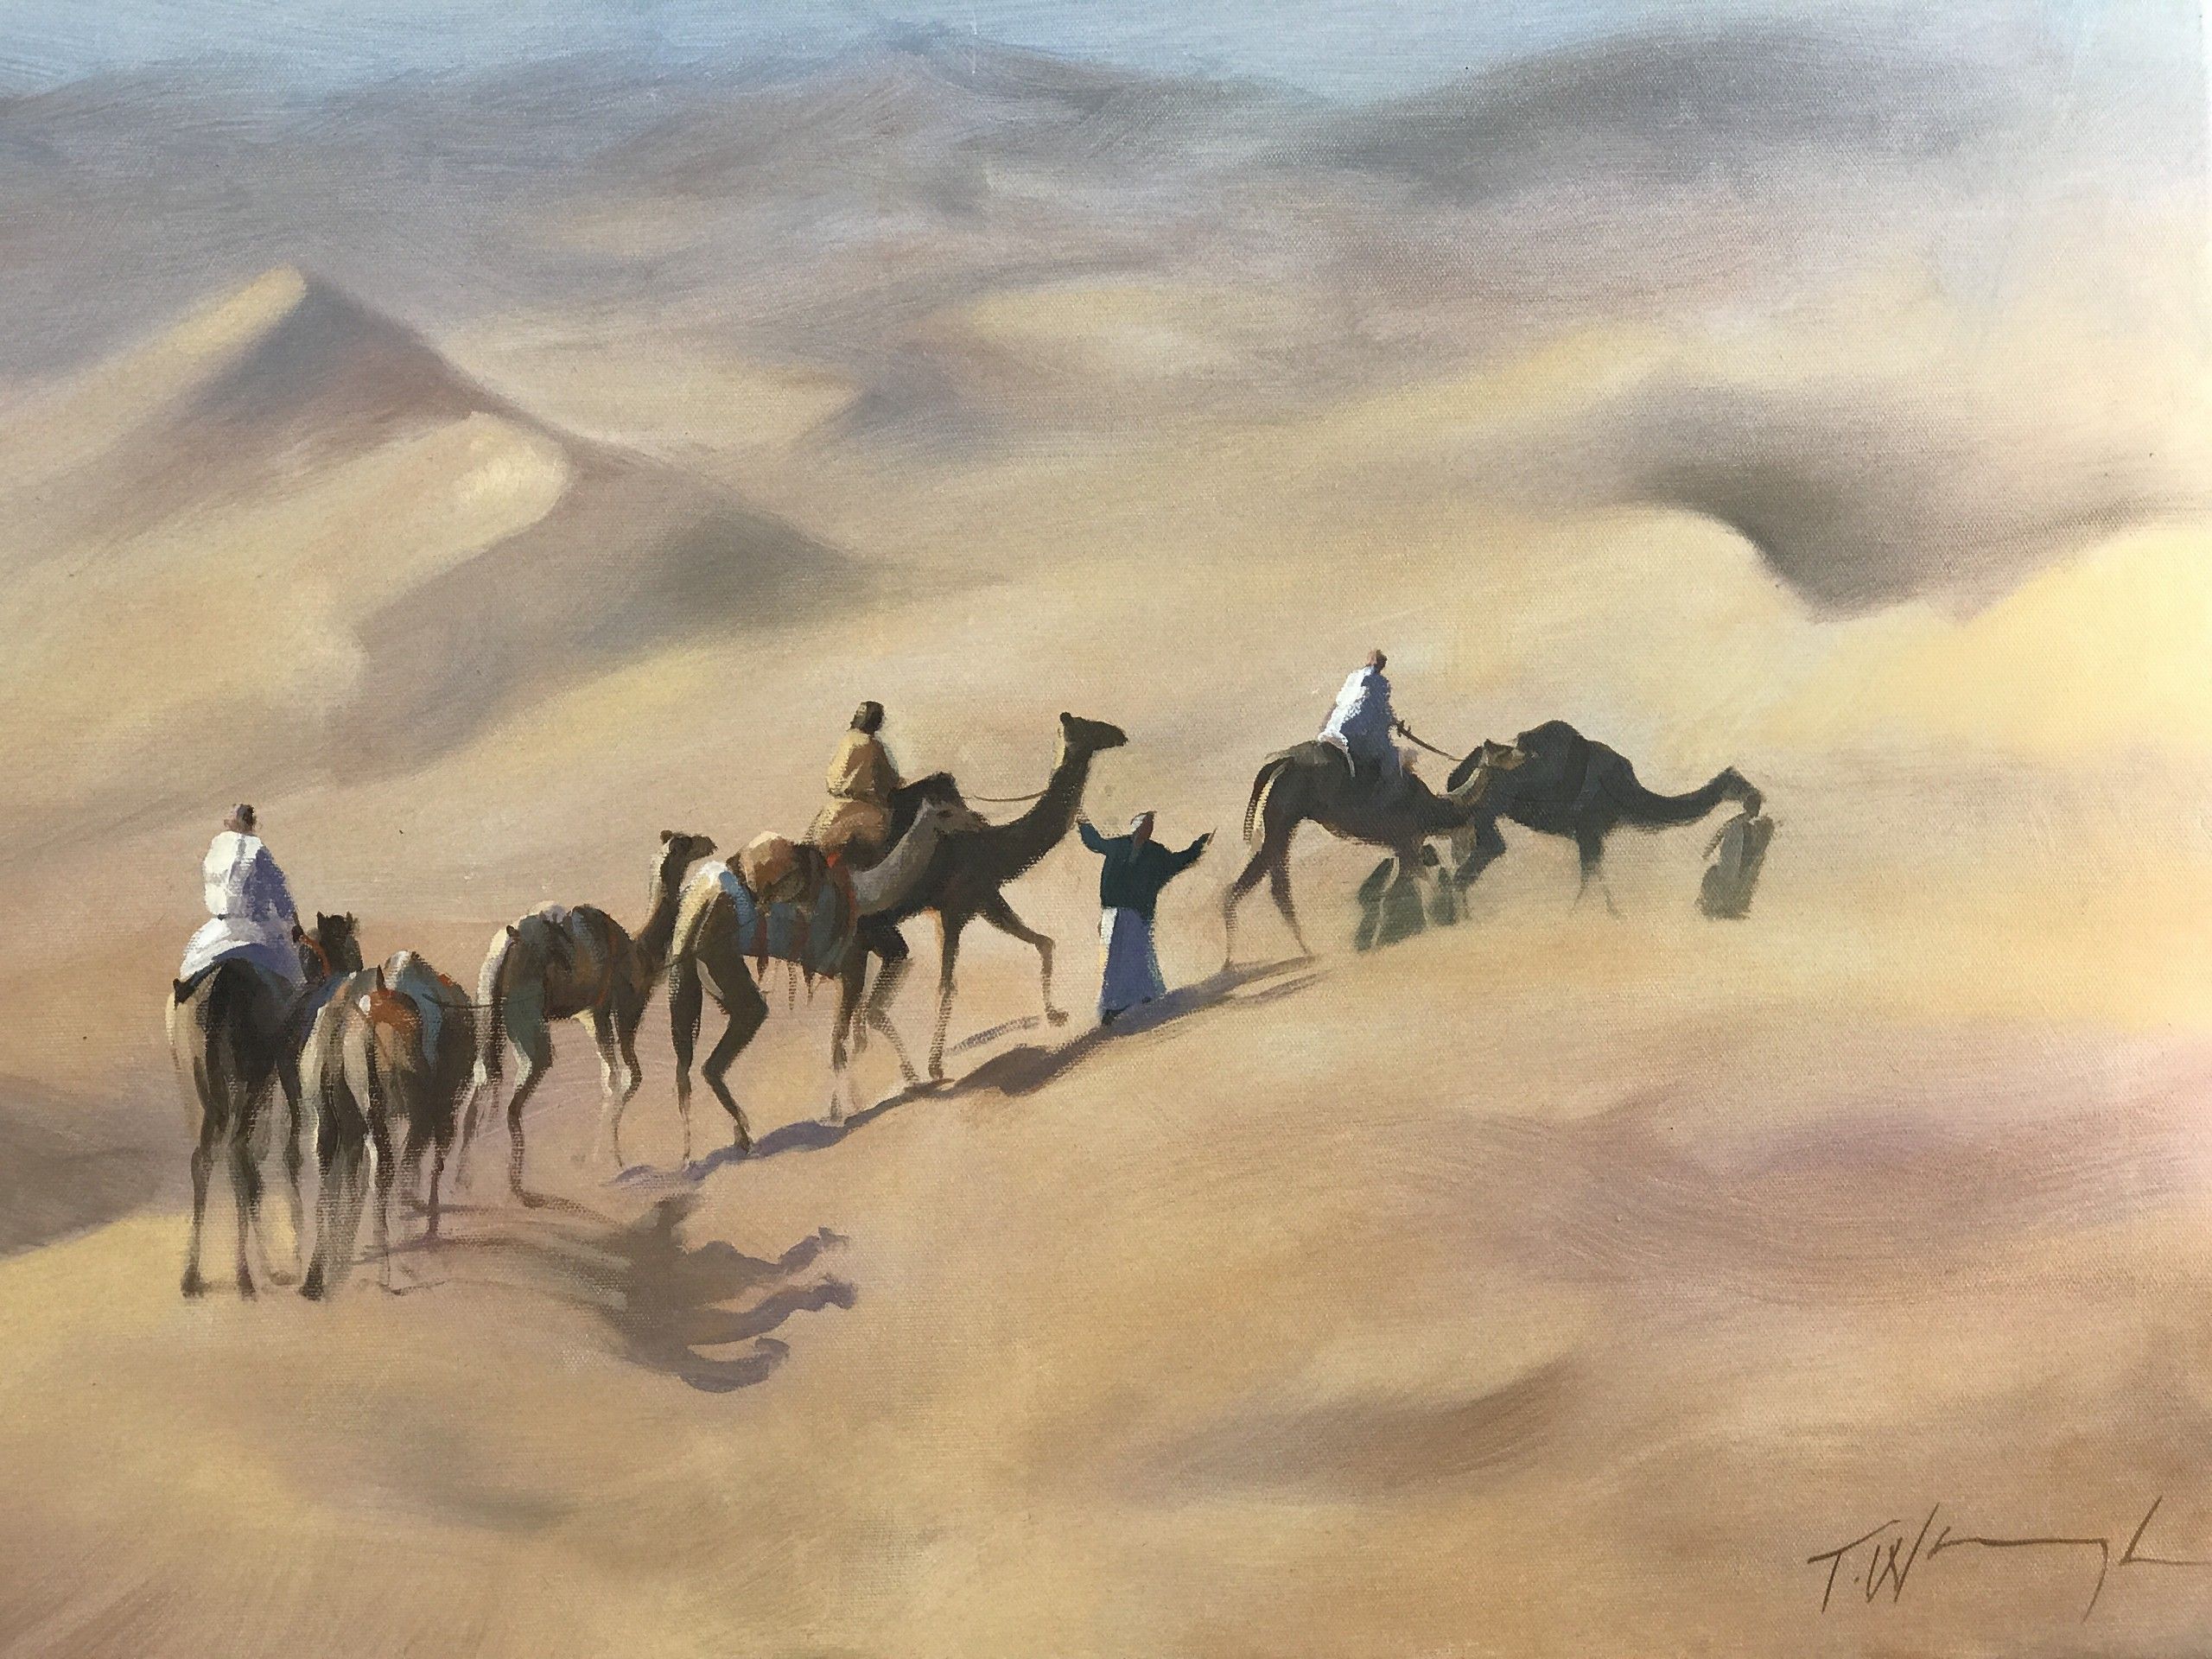 The Rhub Al Khali by Trevor Waugh